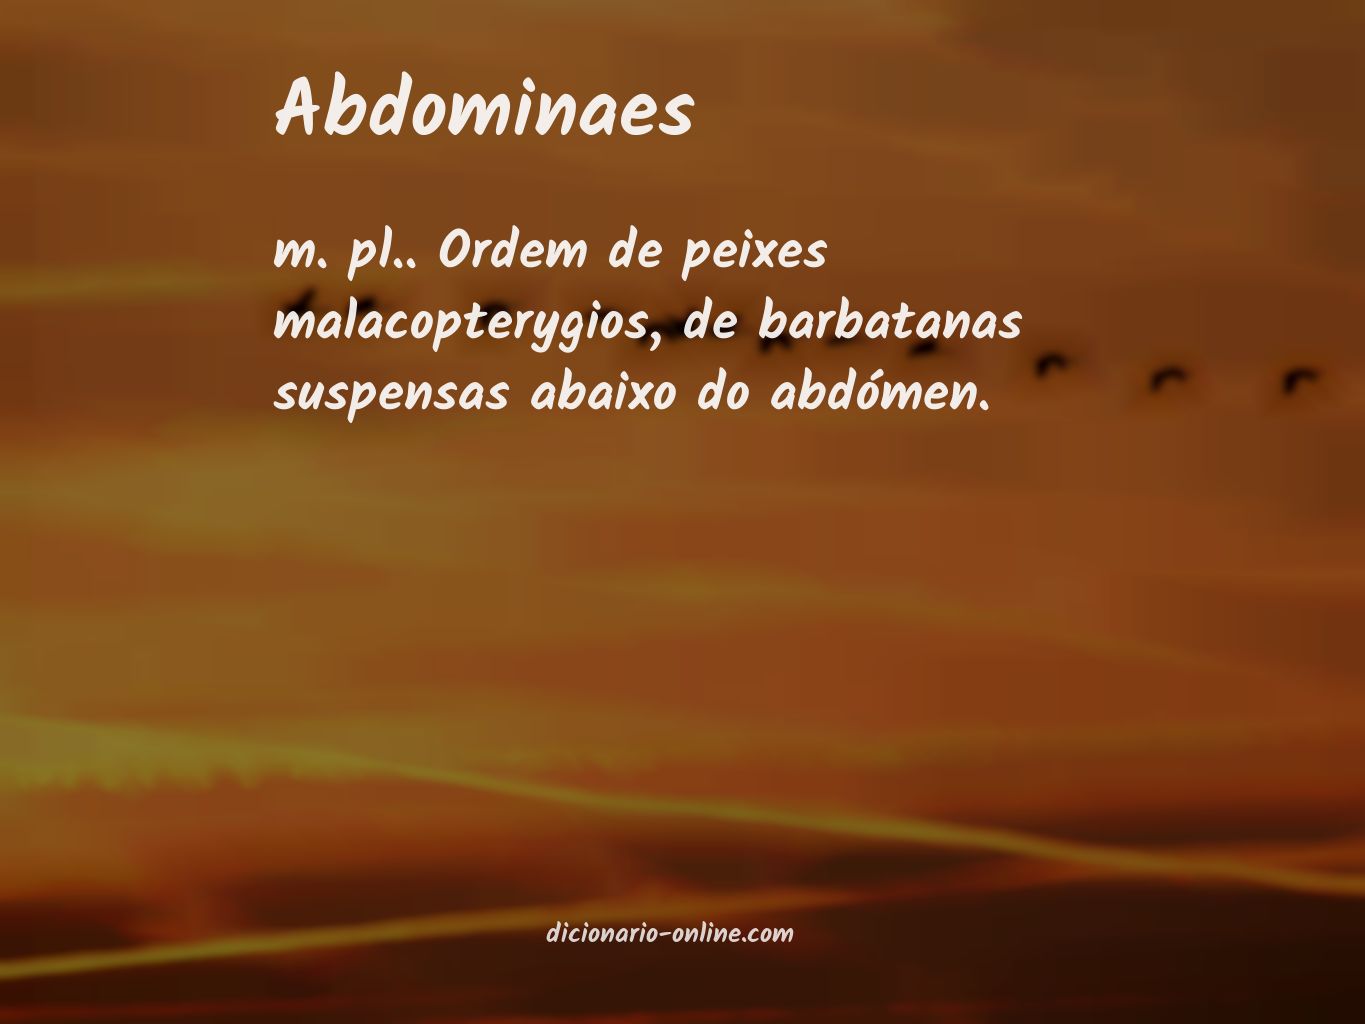 Significado de abdominaes